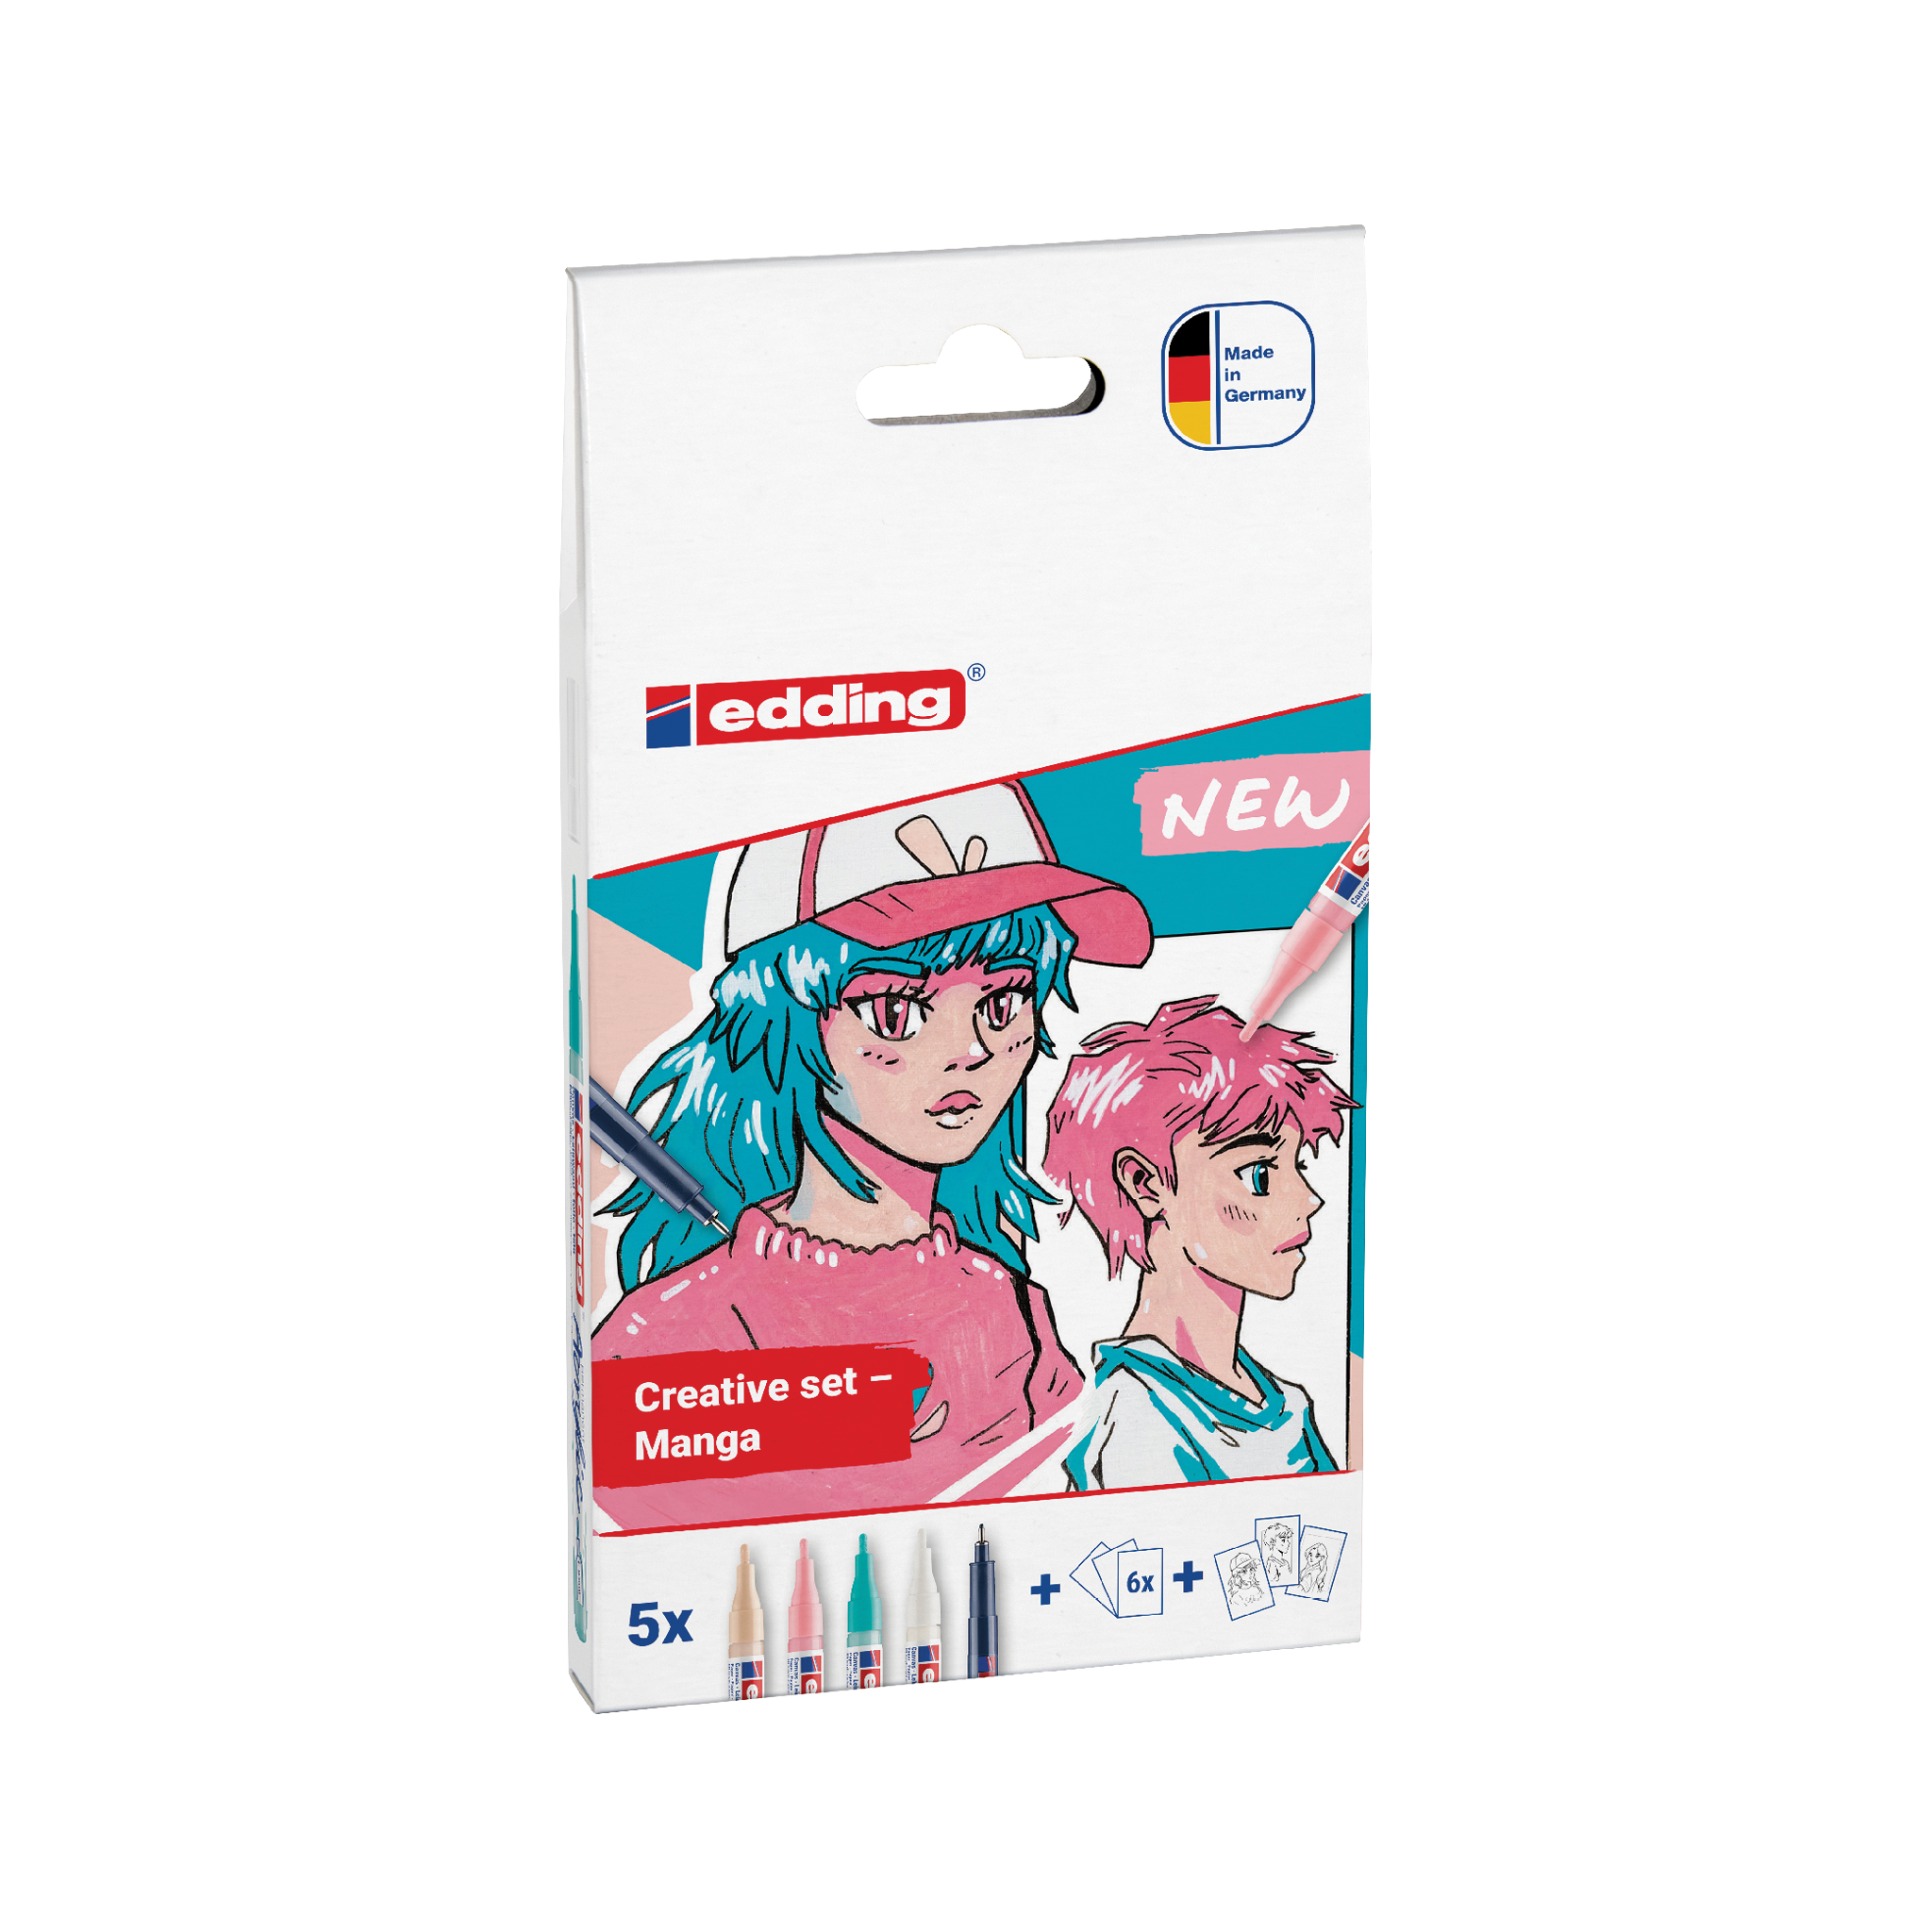 Eine Packung edding Acryl Kreativset Manga-Stifte mit Illustrationen von zwei Manga-Charakteren auf dem Cover, was darauf hinweist, dass das Produkt für Kunstwerke im Manga-Stil geeignet ist.